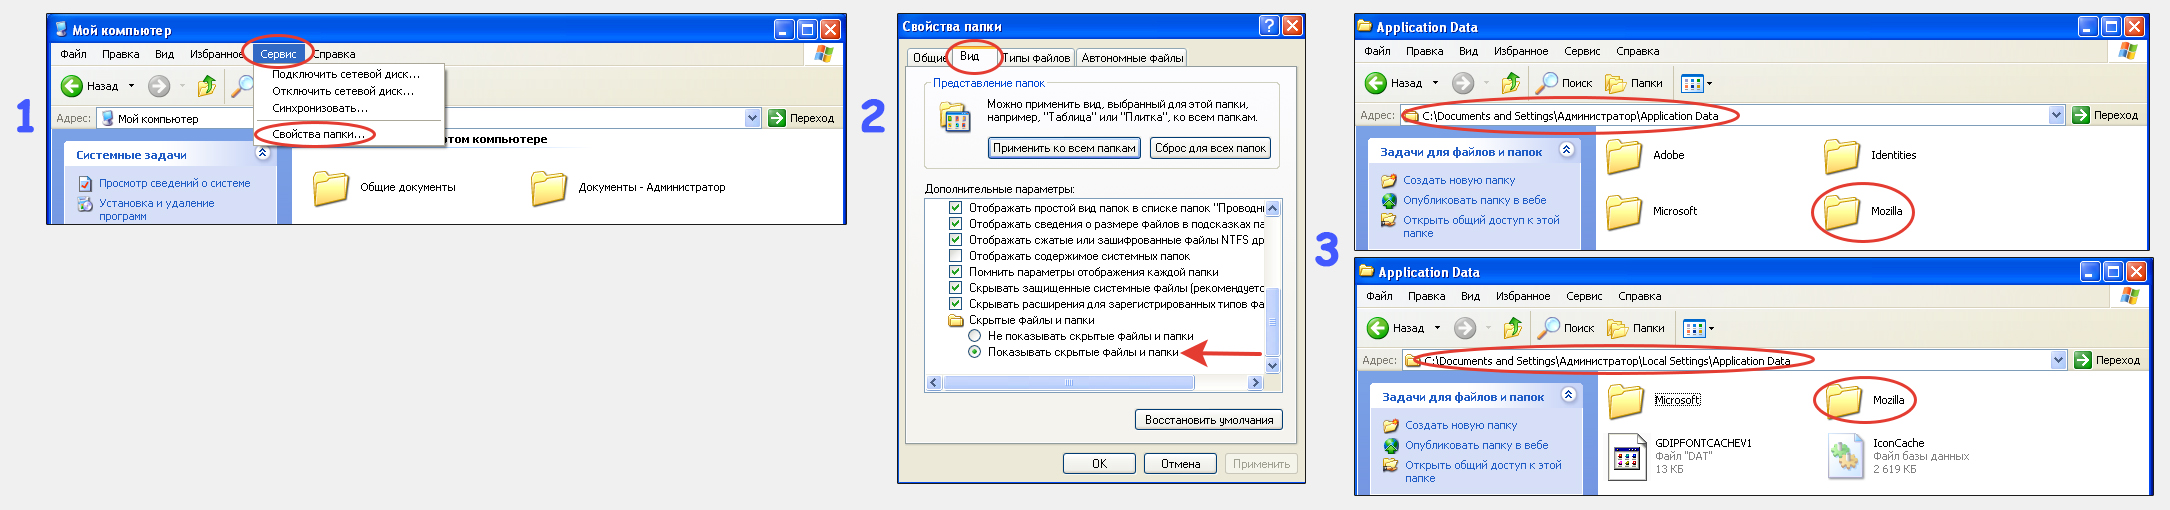 Включение скрытых файлов и папок в Windows XP или 7 и удаление оставшихся директорий браузера в каталоге Application Data.